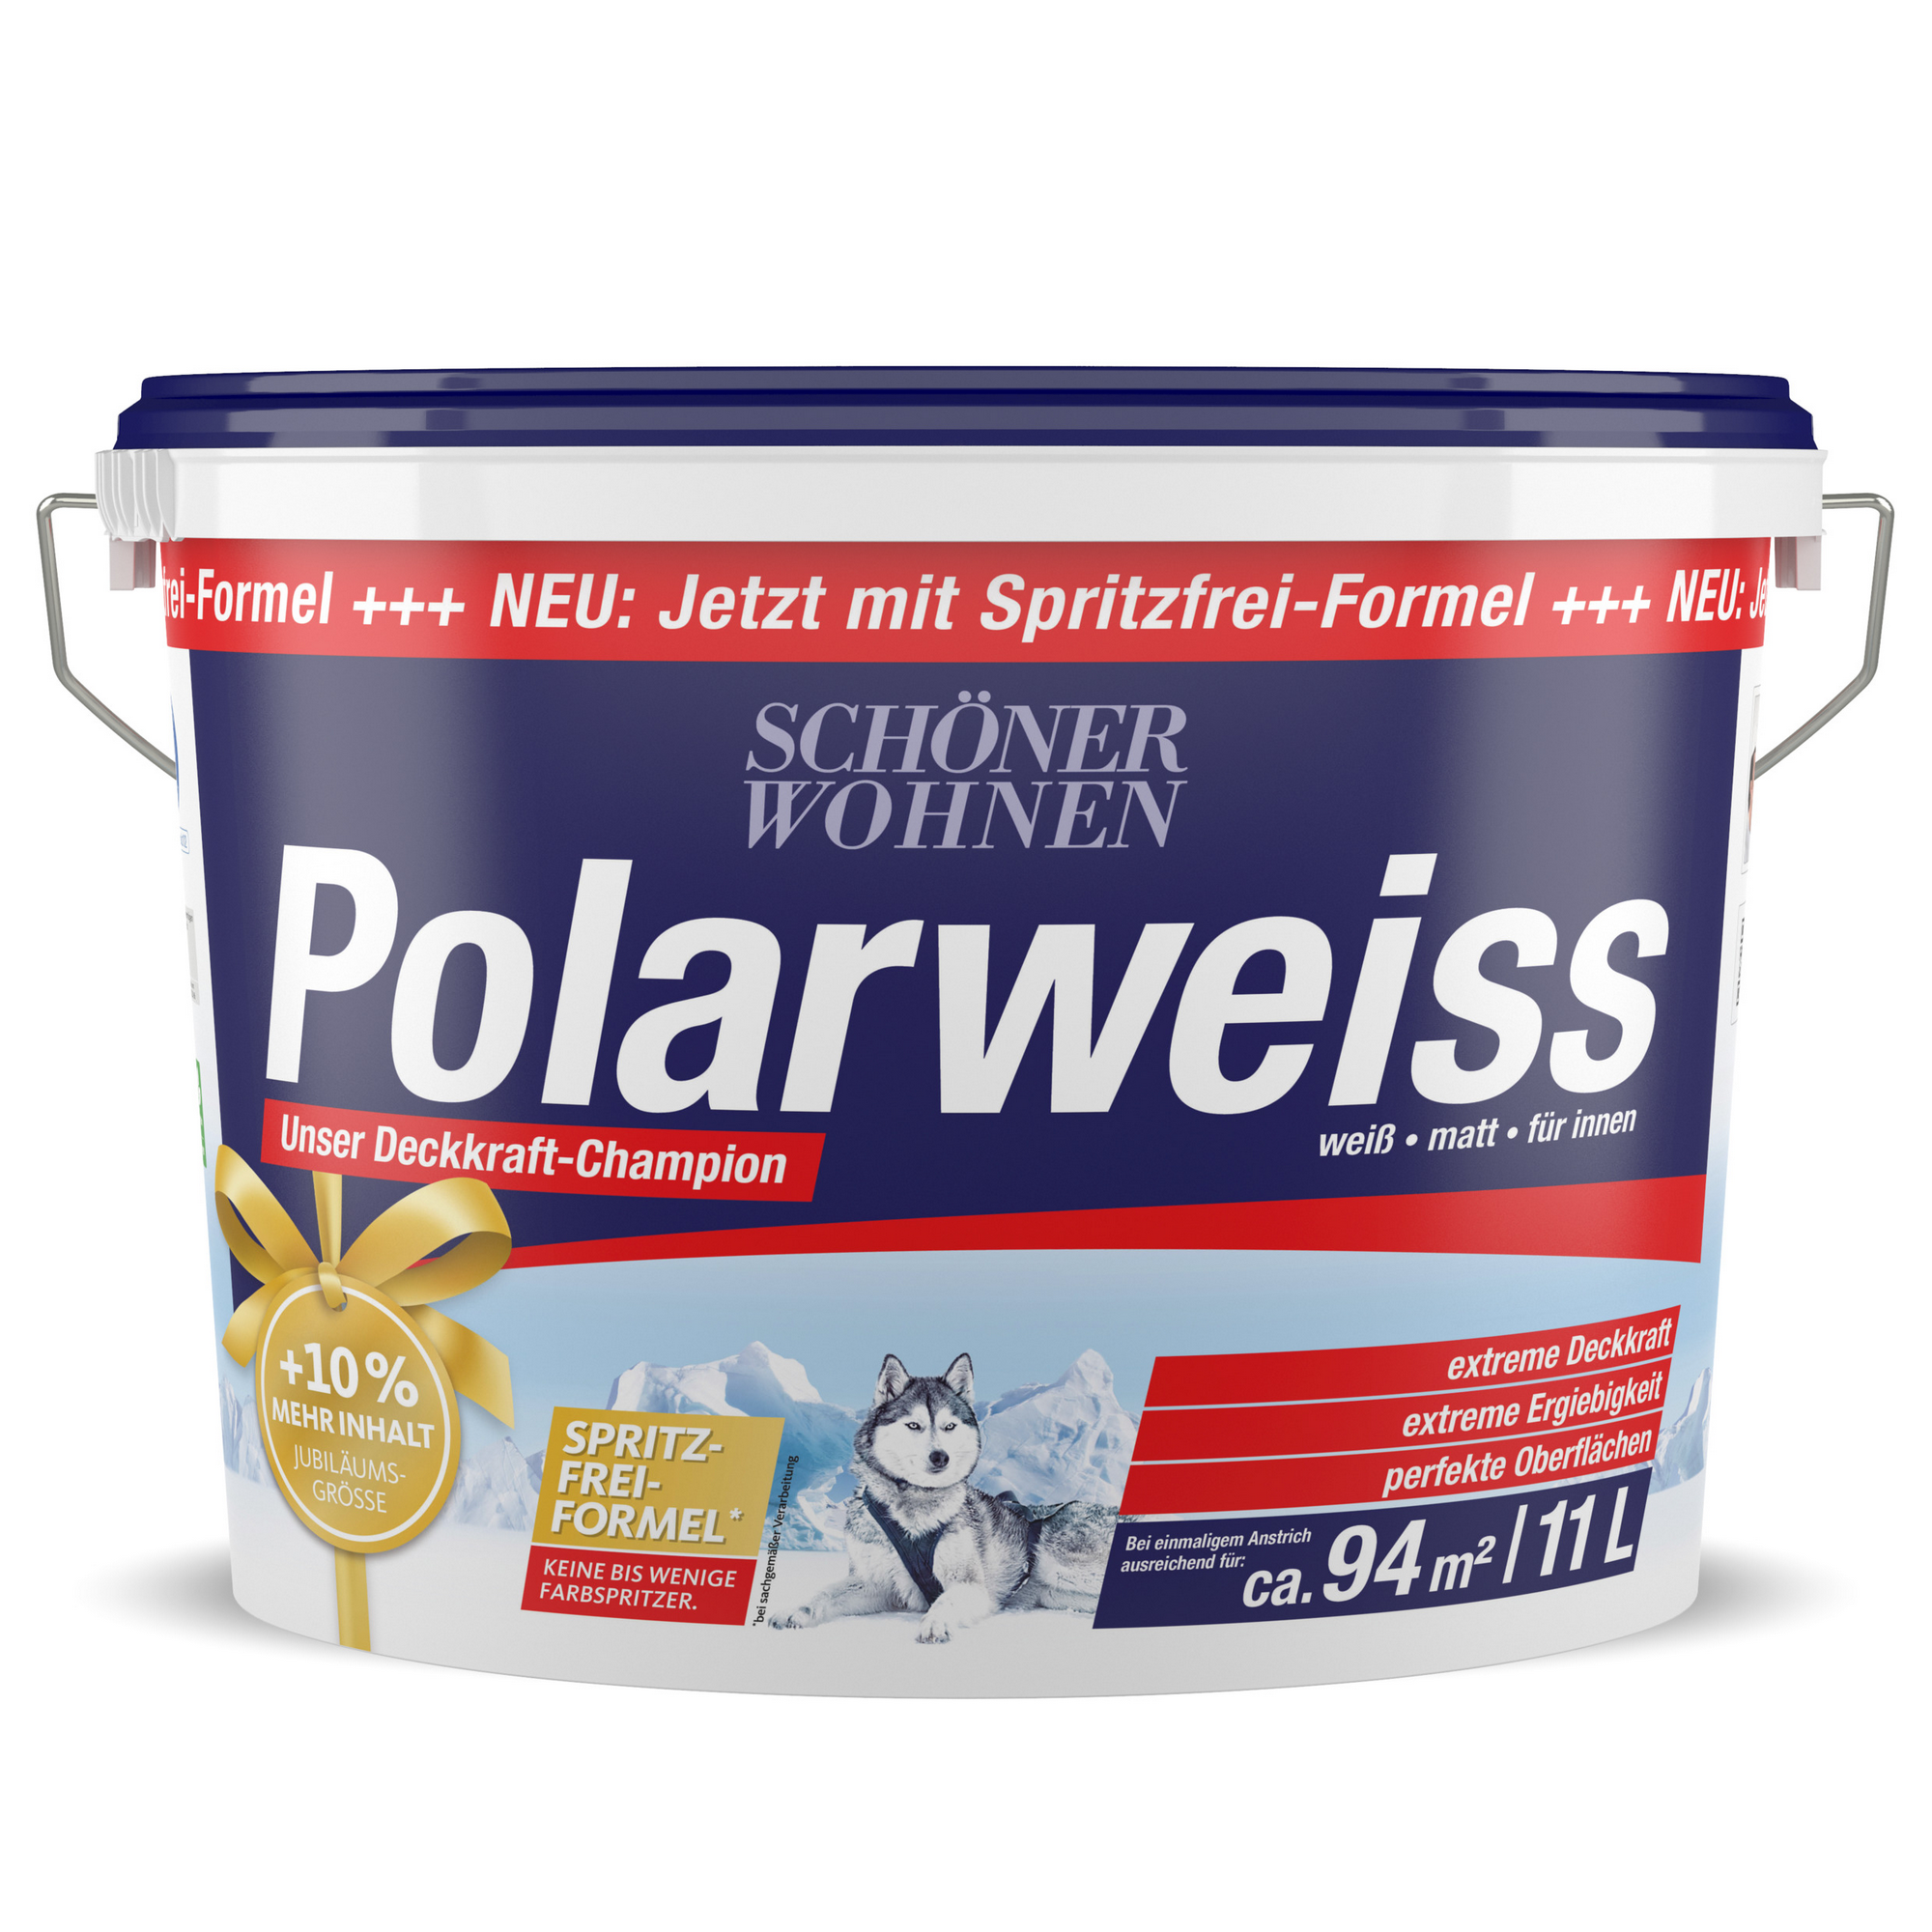 Wandfarbe 'Polarweiß' matt 11 l + product picture